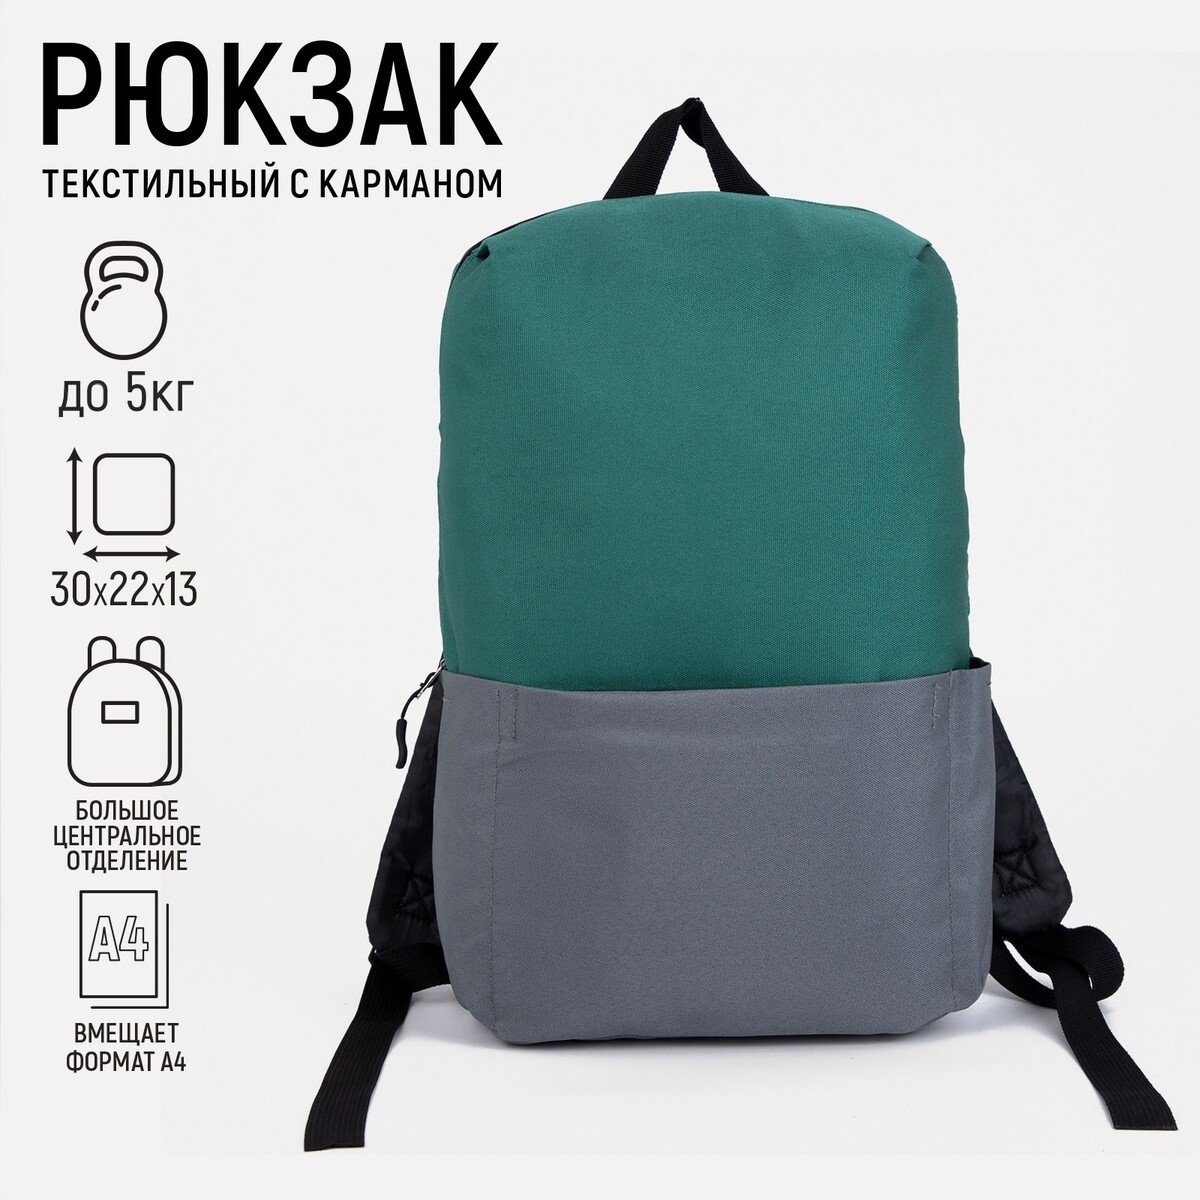 Рюкзак текстильный с карманом, серый/зеленый, 22х13х30 см рюкзак текстильный mystery с карманом 27 11 37